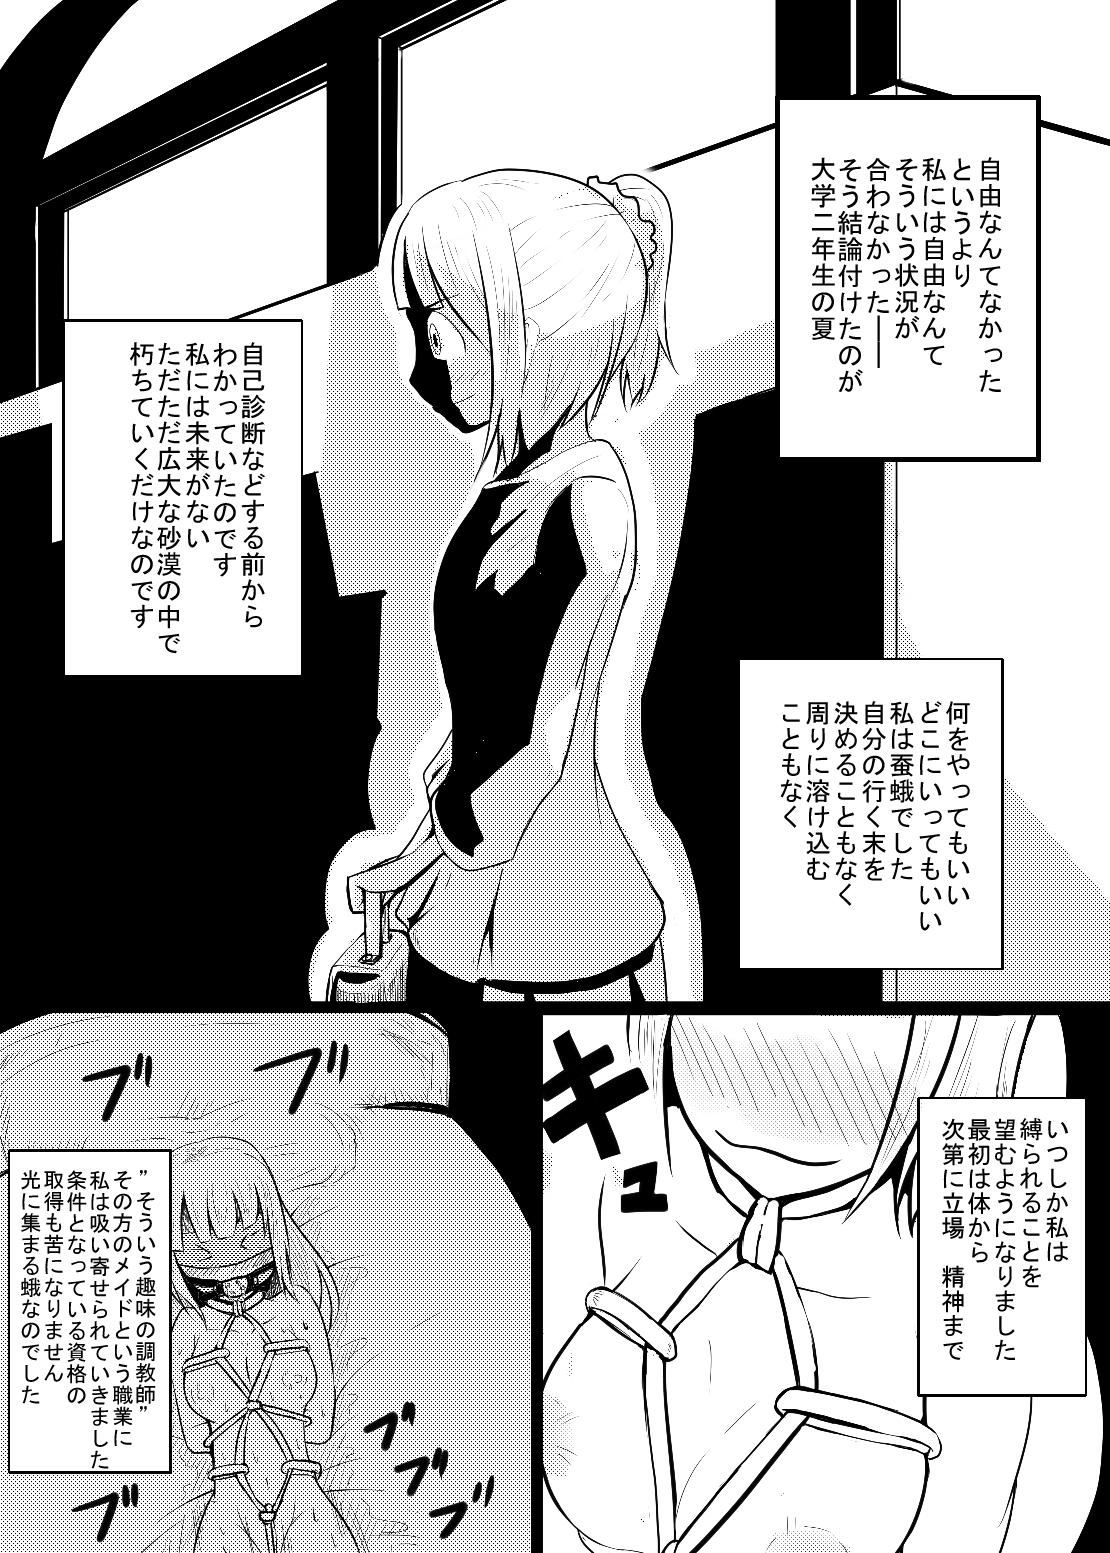 Redhead Maid-san no Chichi o Ookiku Shitari Shishi o Buttagiru dake no Manga Curious - Page 3